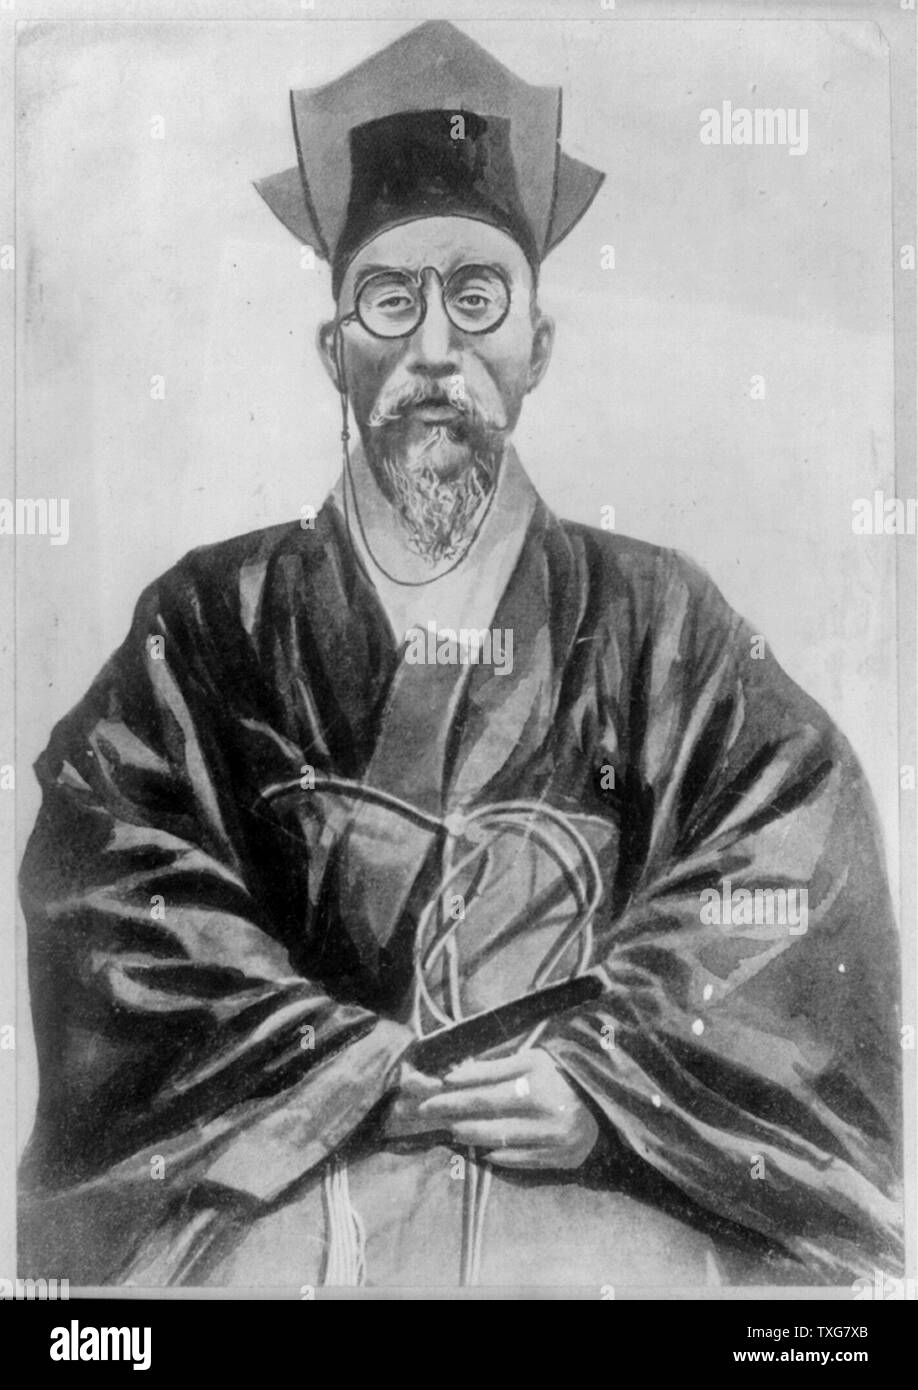 L'Empereur Kojong, de Corée, portant des lunettes (verres), assis Banque D'Images